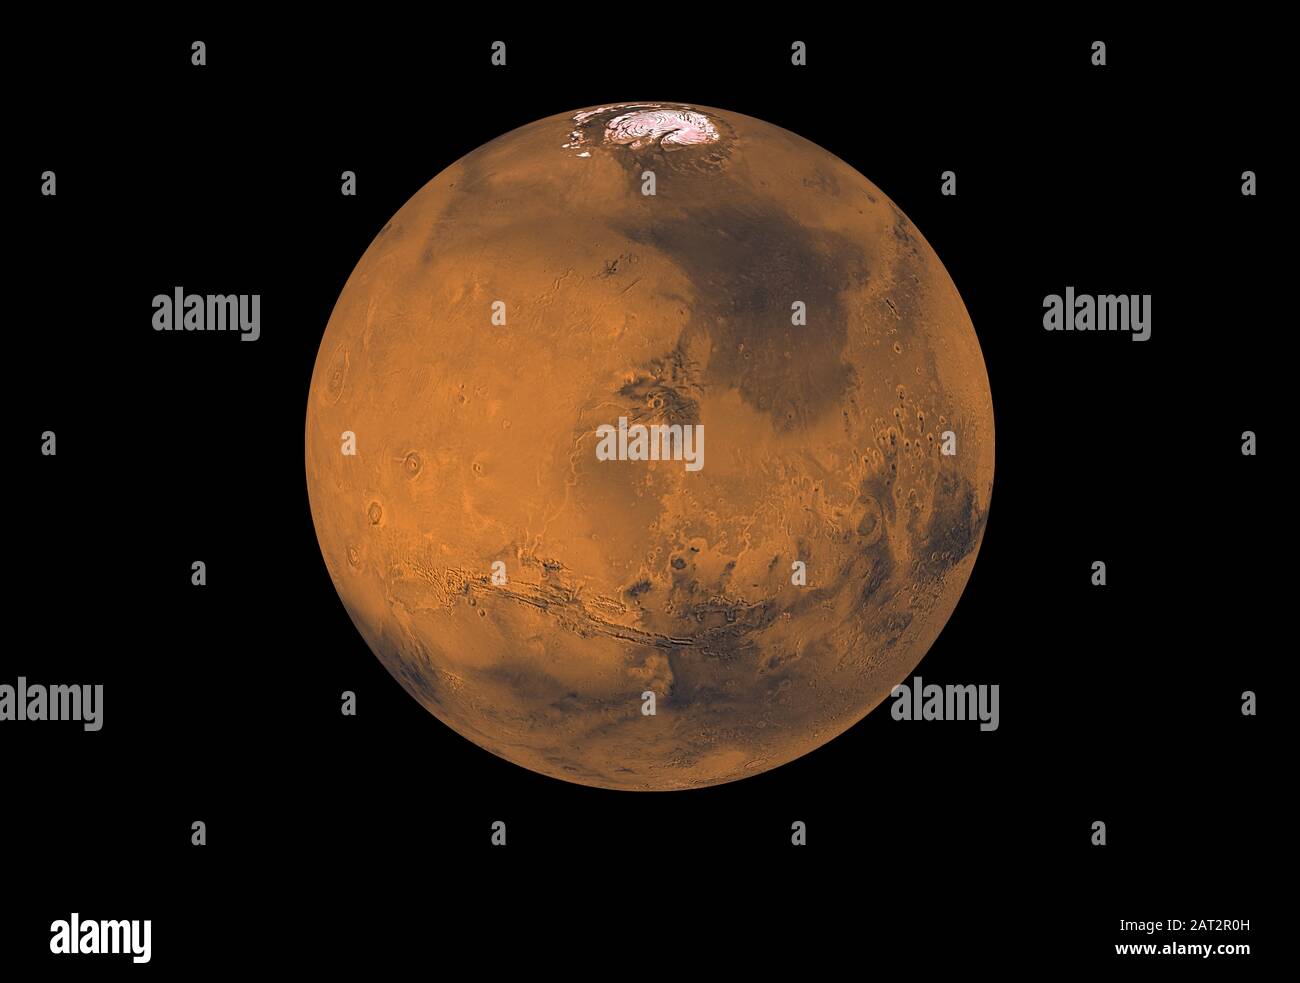 Mars - 1998 - Etwa 1000 Rotfilter- und Veilchenfilter-Bilder von Viking Orbiter wurden verarbeitet, um diese globale Farbdeckung des Planeten Mars zu ermöglichen Stockfoto